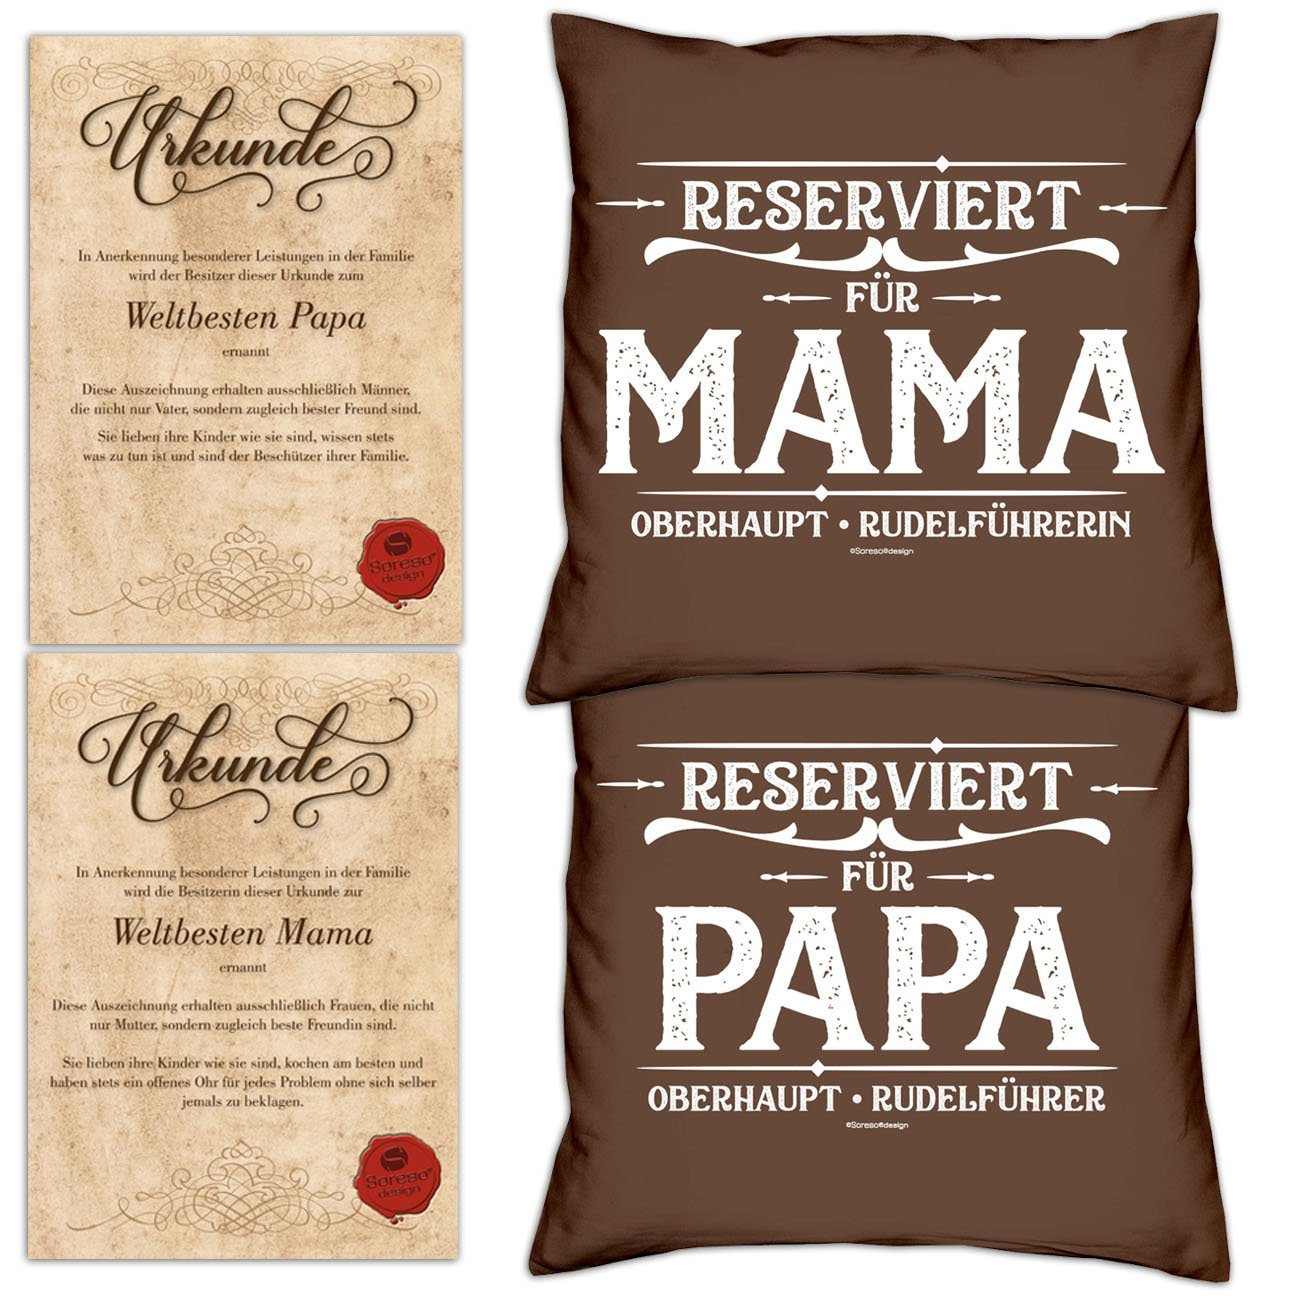 Soreso® Dekokissen Kissen-Set Reserviert für Papa Reserviert für Mama mit Urkunden, Geschenkset Geburtstag - Geschenkidee Hochzeitstag braun